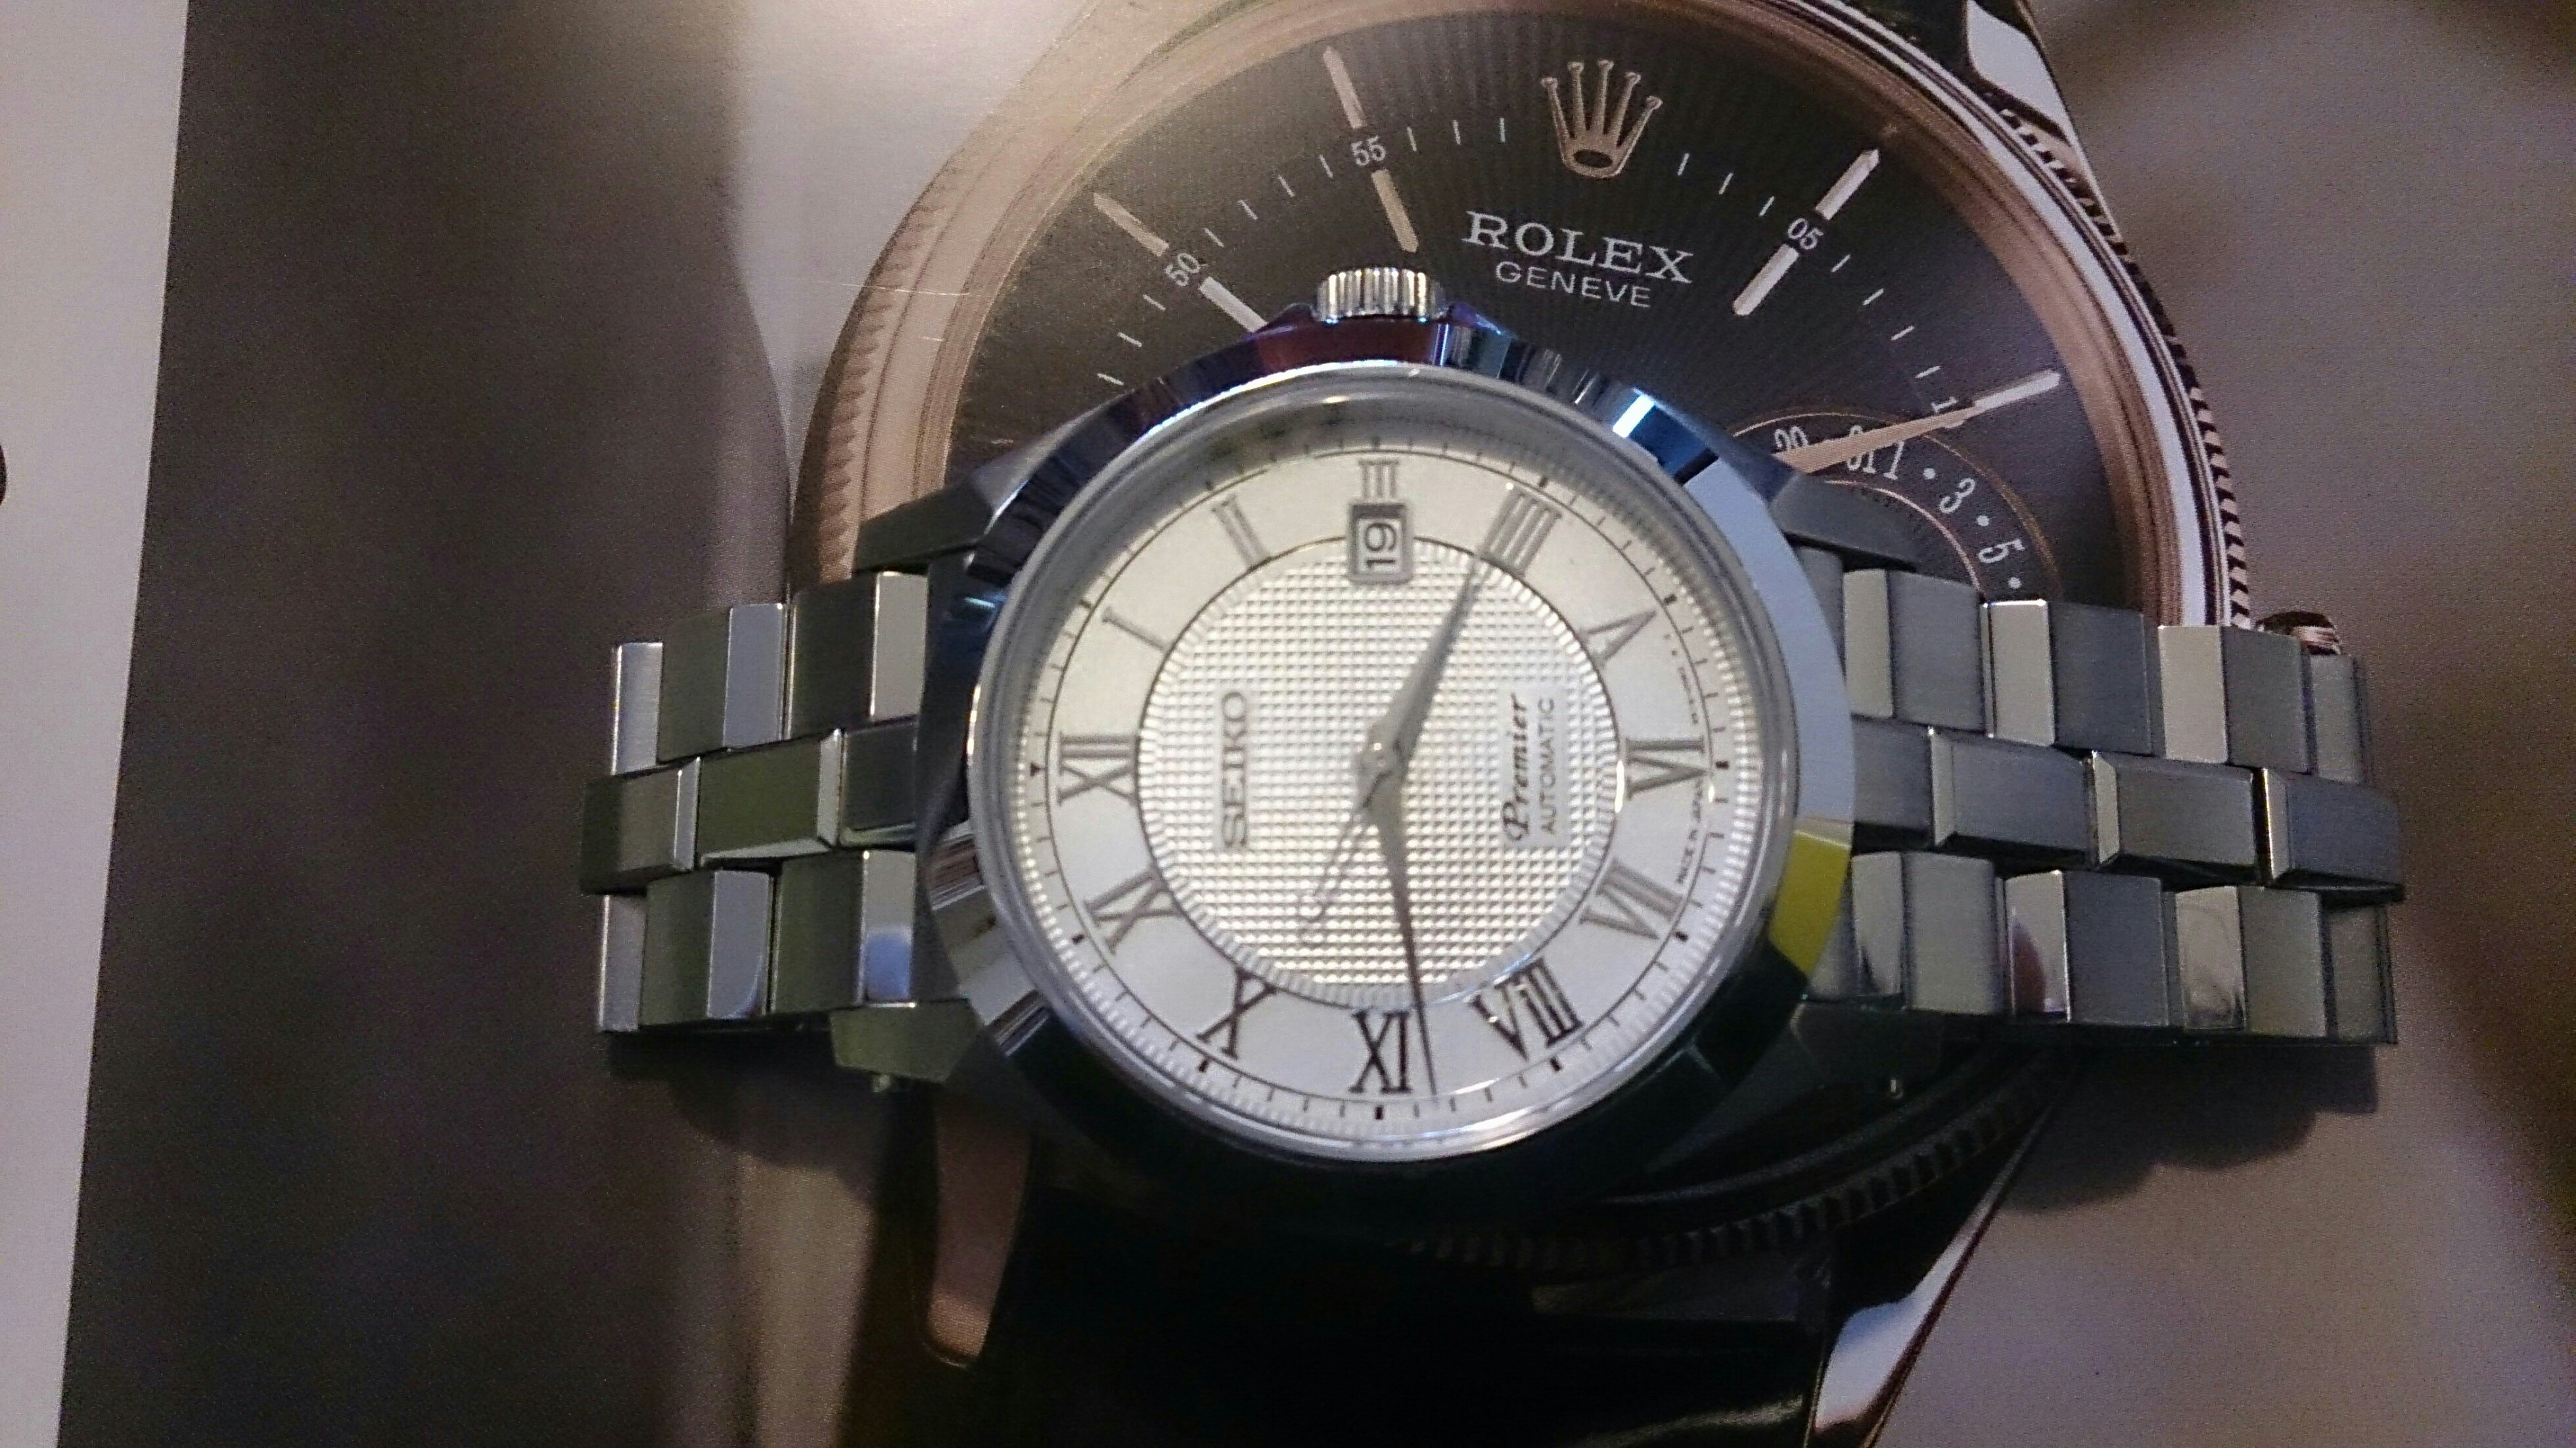 腕時計 Seiko Premier Spb007j1 Customized その2 ブレスレットデザイン 着用感 腕時計 革靴 万年筆愛好倶楽部